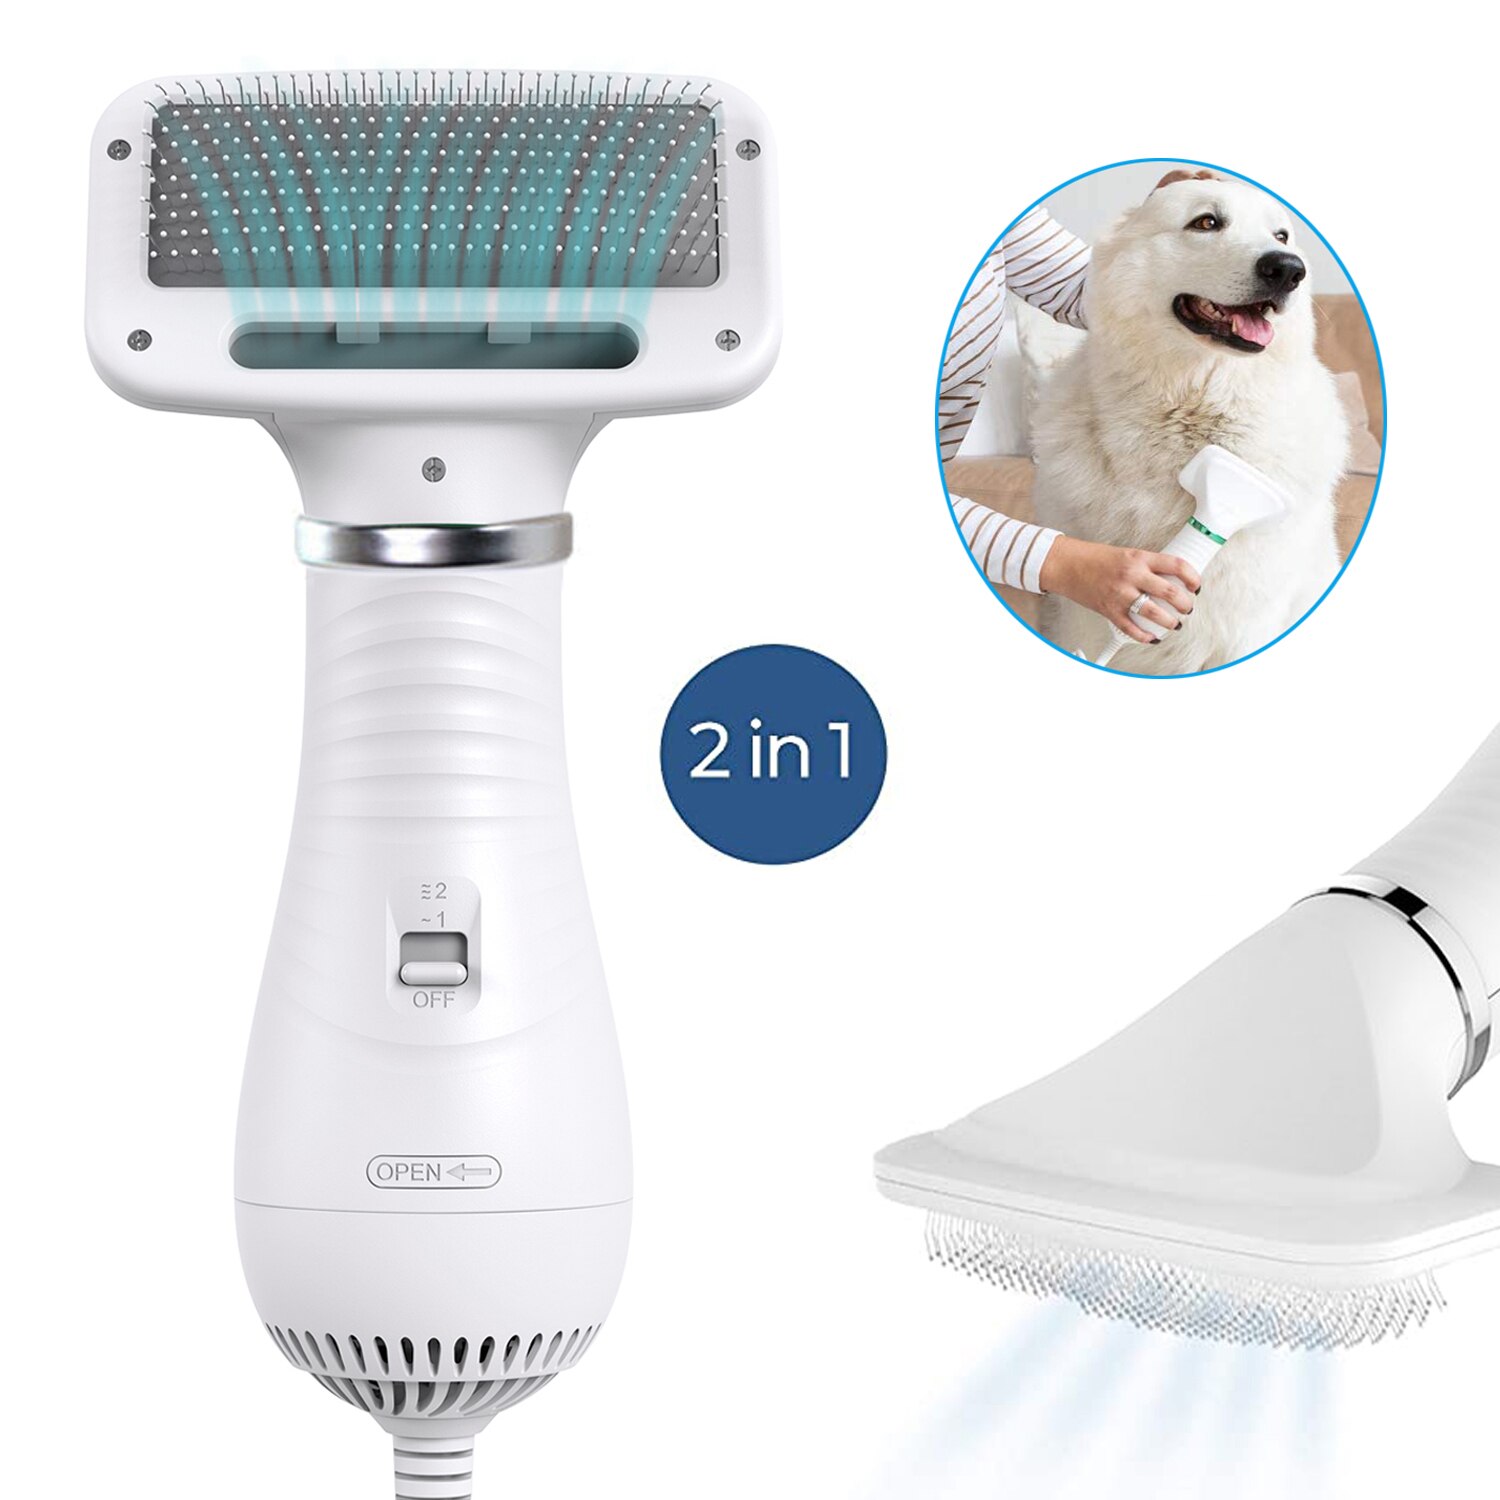 2-In-1 Hond Föhn Kam Grooming Blower Met Verstelbare Temperaturen Instellingen Voor Kleine En Medium honden En Katten